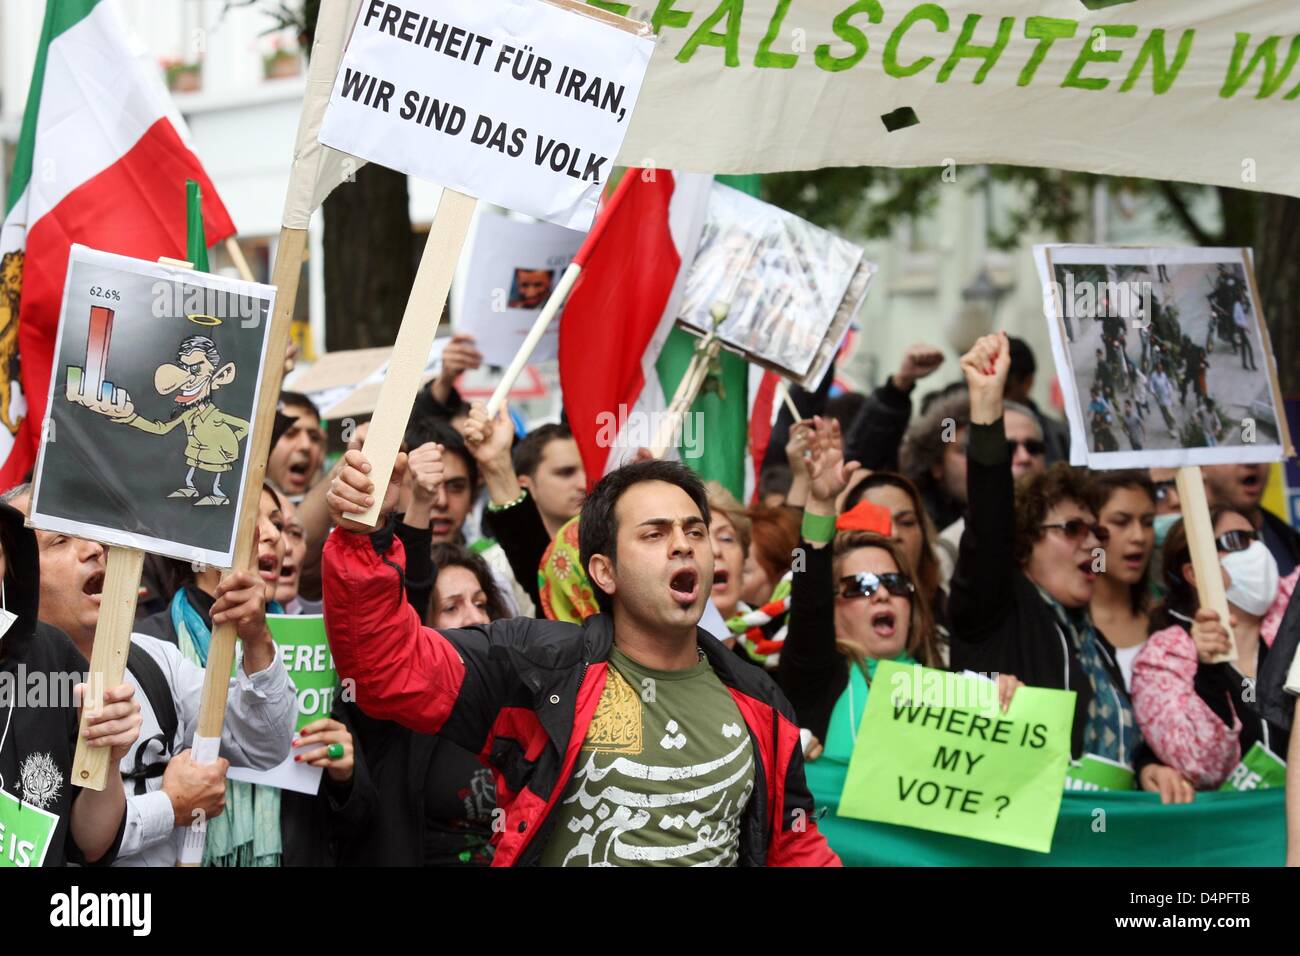 Iranische Demonstranten während einer Protestaktion Kundgebung gegen die Ergebnisse und Conseuqences zu den iranischen Präsidentschaftswahlen in Hamburg, Deutschland, 20. Juni 2009. Nach Angaben der Polizei nahmen rund 3.000 Menschen in der Protestkundgebung. Foto: MALTE Christen Stockfoto